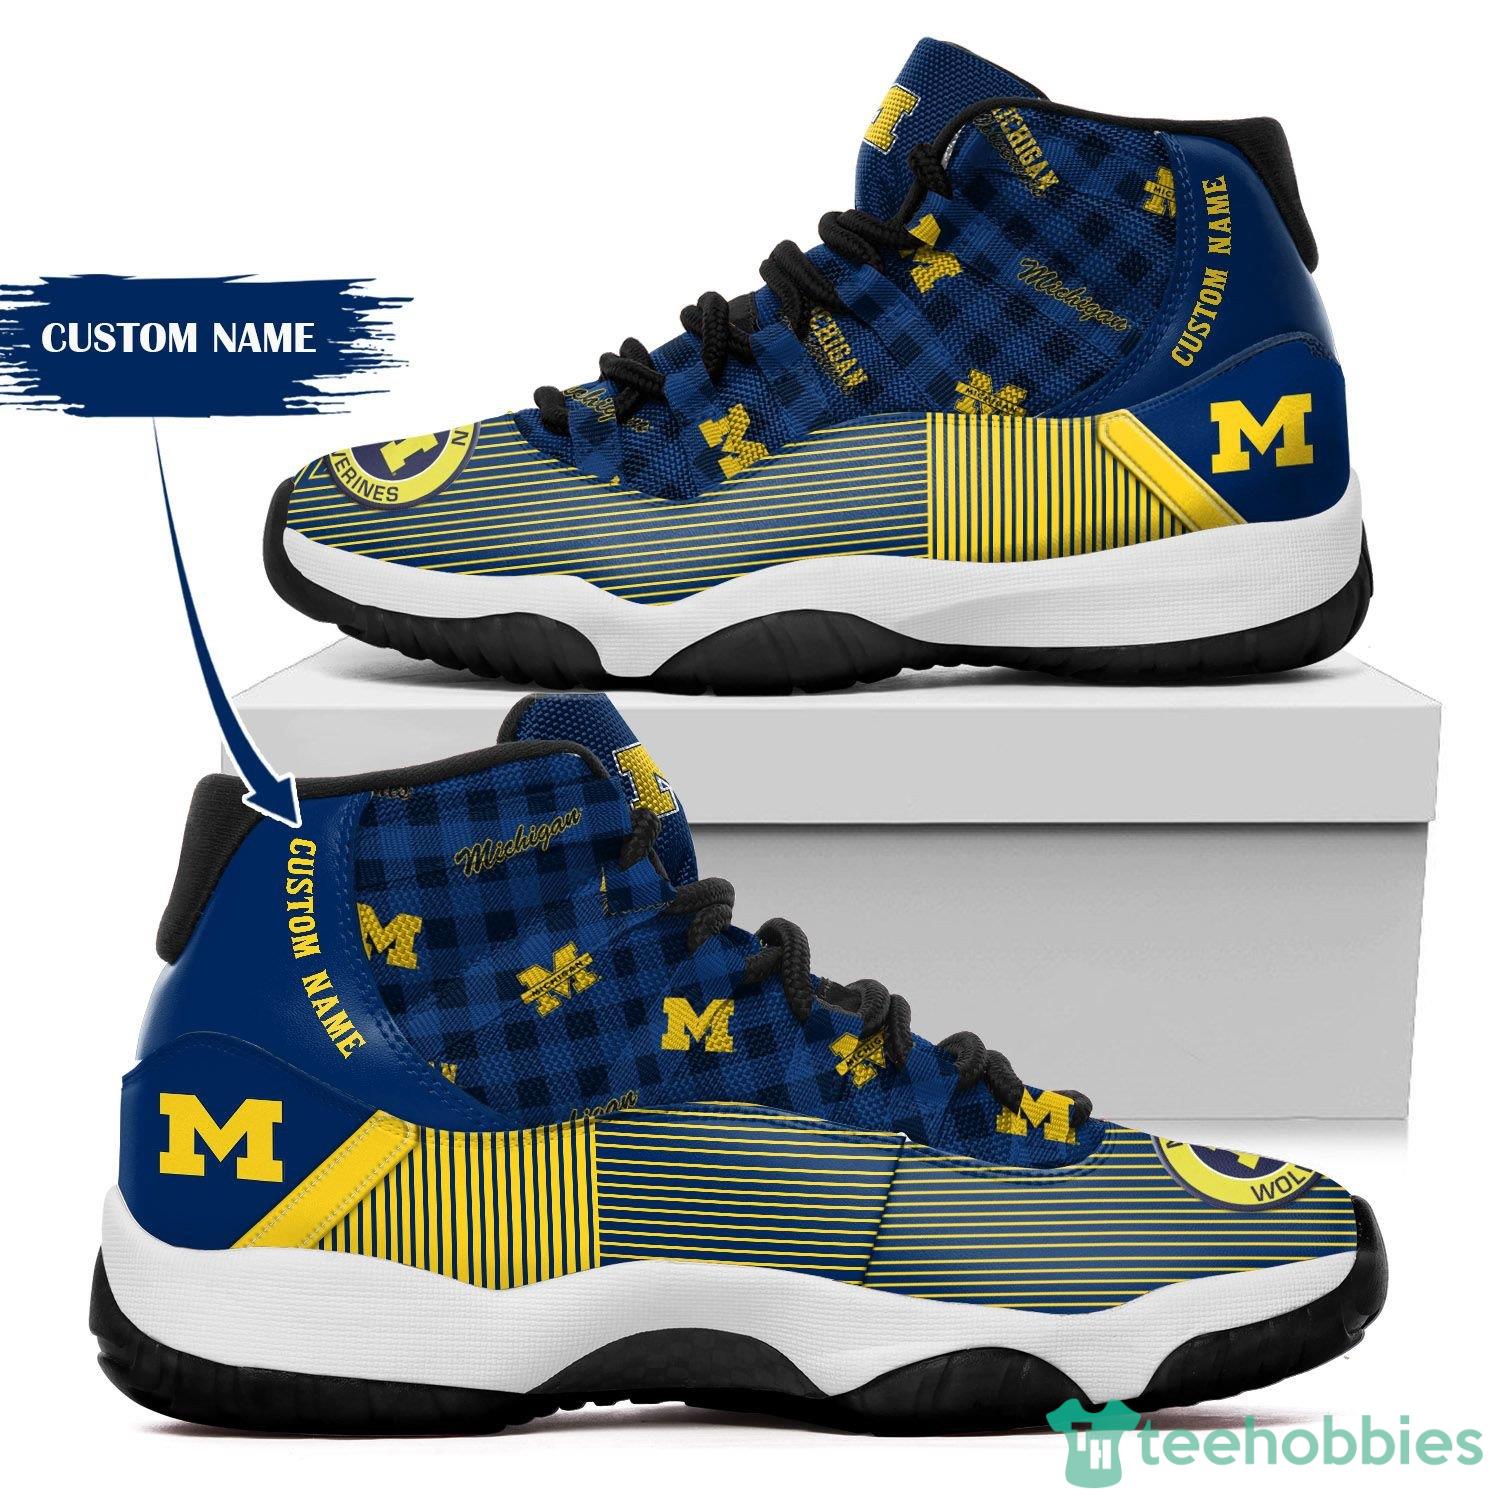 Air Jordan 13 Michigan Wolverines Custom Tennis Shoes, Sneakers